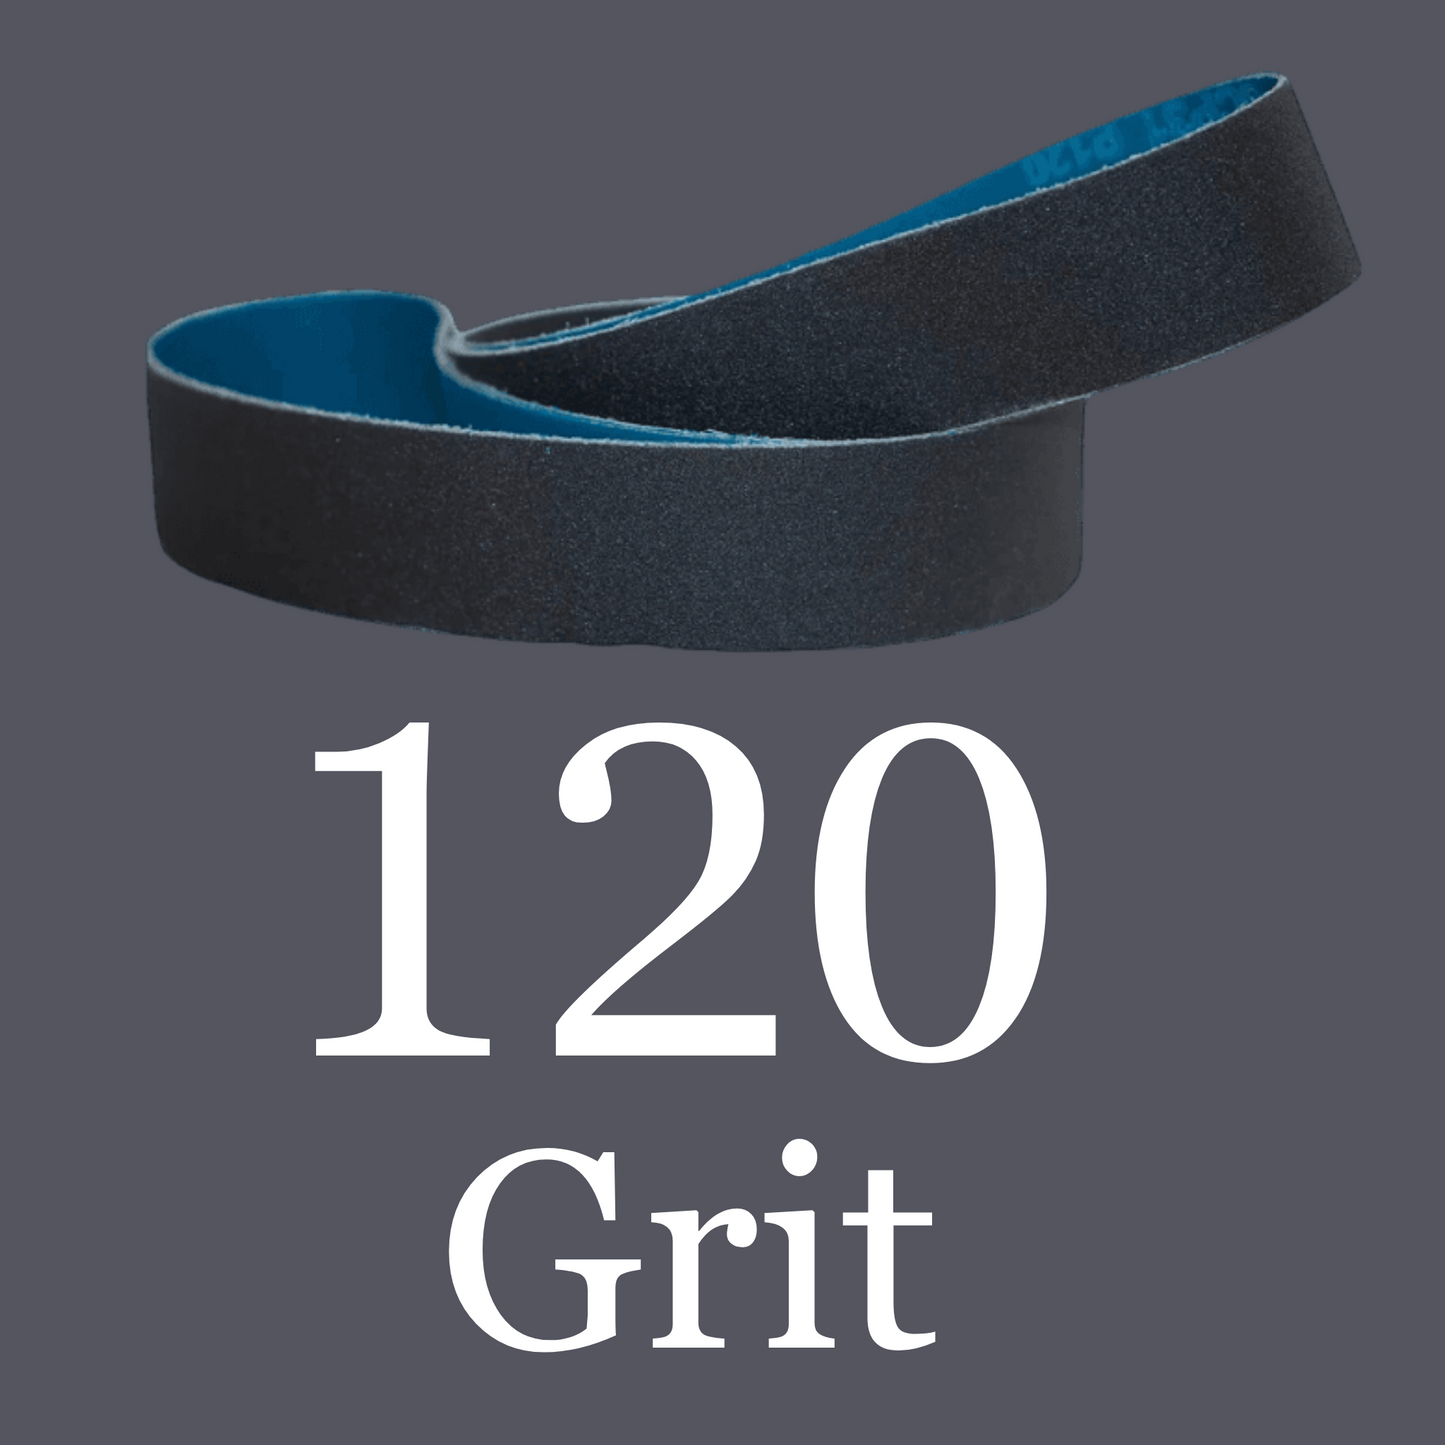 2” x 72” Premium Black Silicon Carbide “Y” Belts 120 Grit